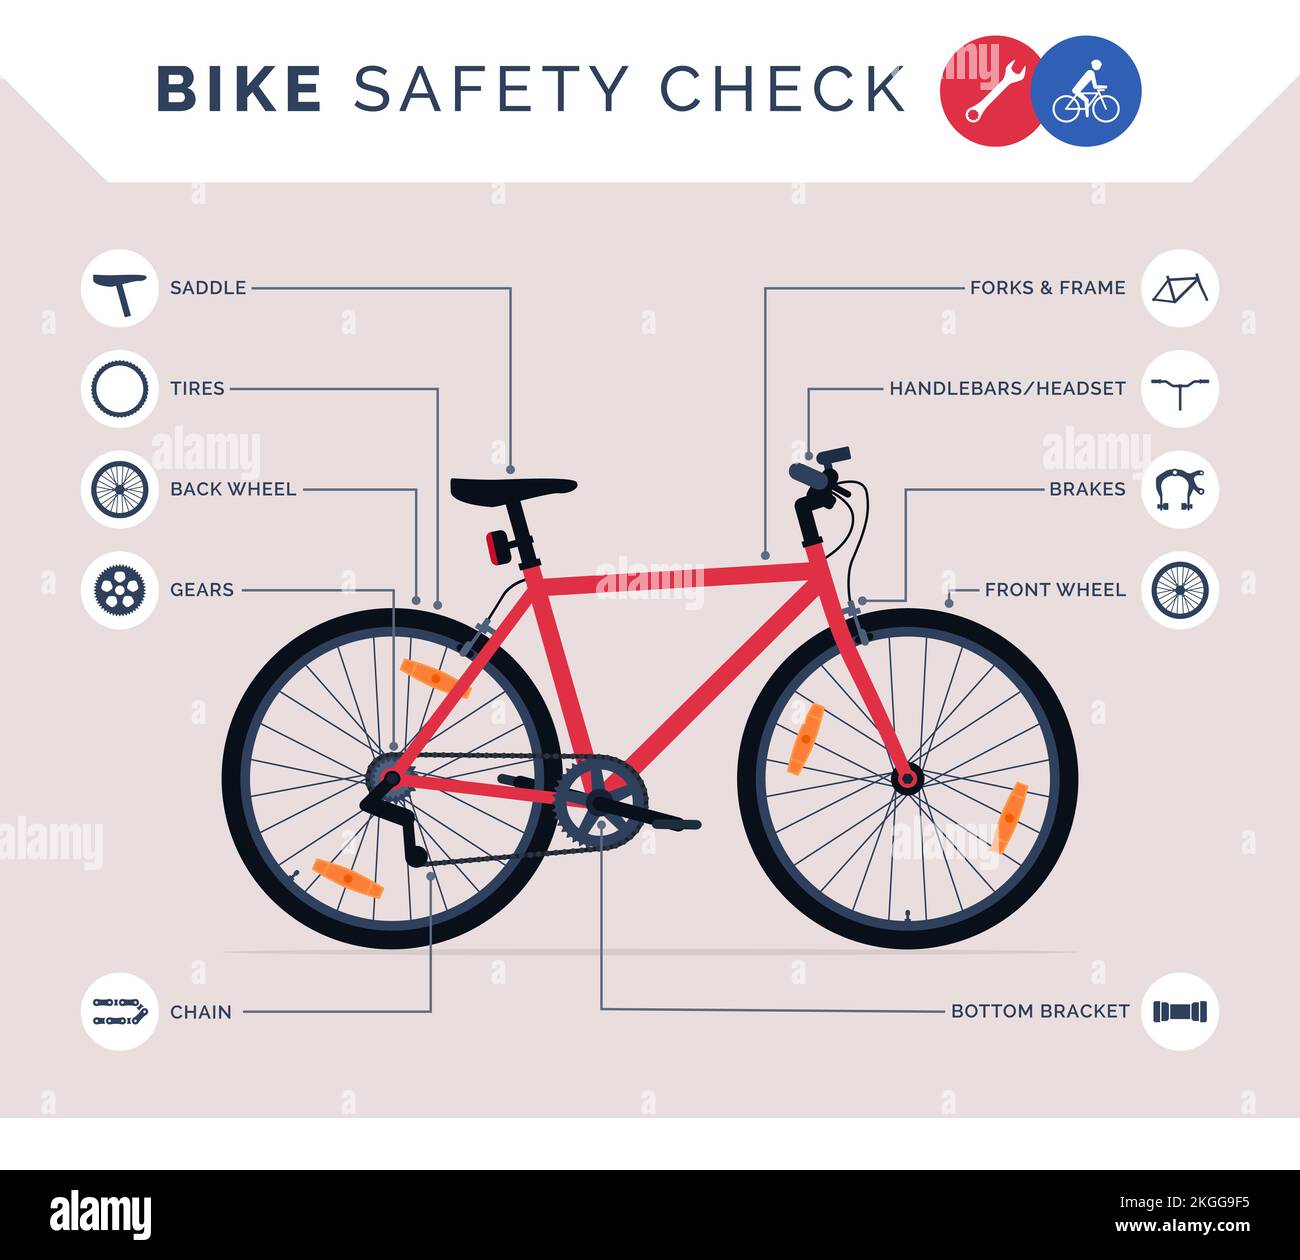 Entretien des vélos : infographie de vérification des vélos avant l'utilisation avec icônes de pièces de vélo Illustration de Vecteur